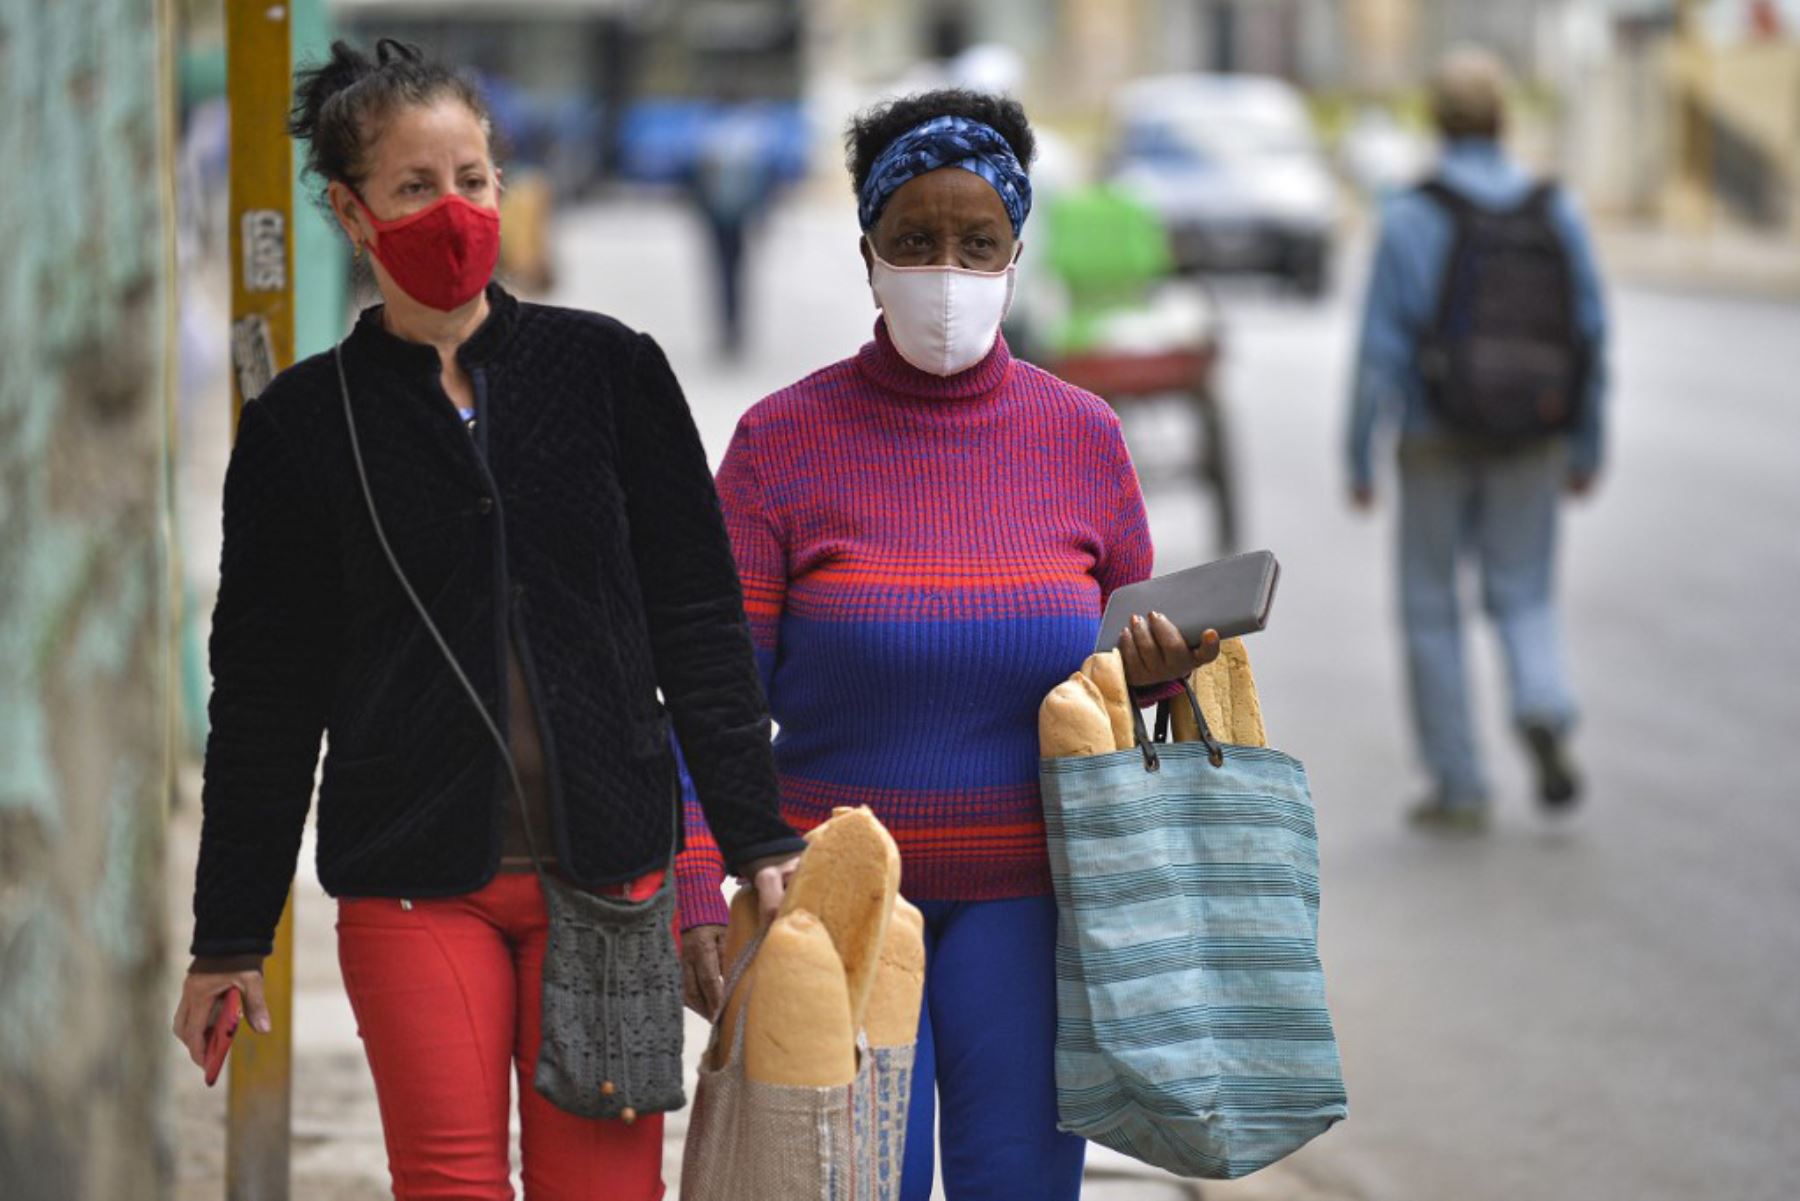 Las mujeres usan máscaras faciales mientras caminan después de comprar pan en La Habana, mientras aumentan los casos de covid-19 en la nación isleña. Foto: AFP